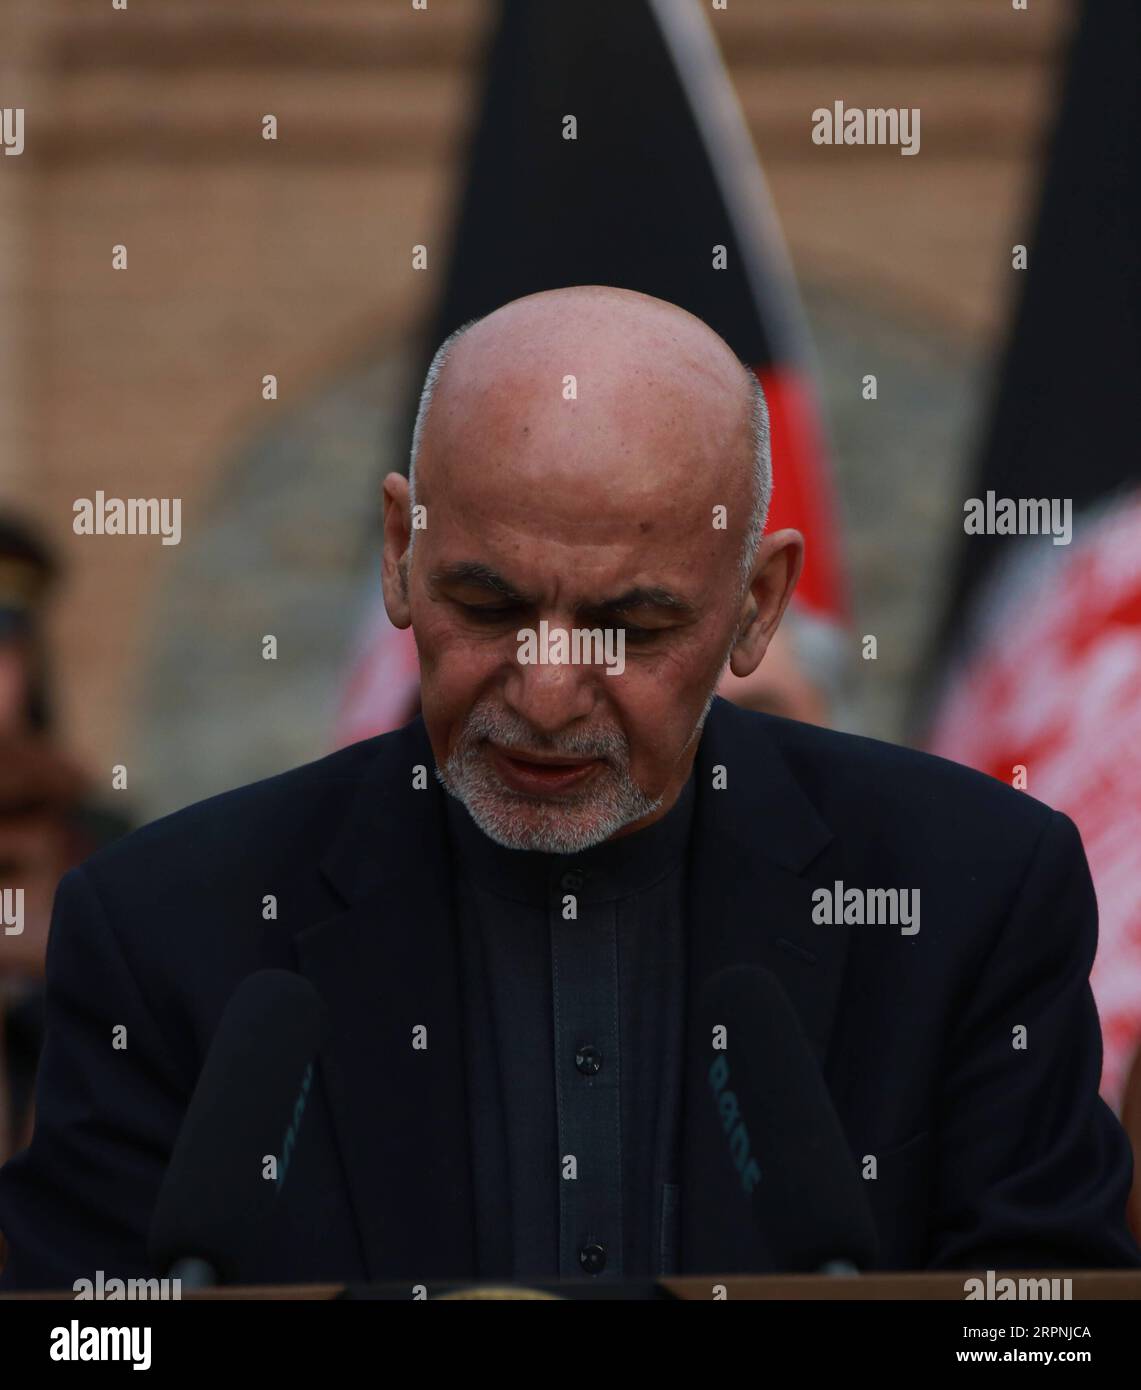 200229 -- KABUL, 29. Februar 2020 Xinhua -- der afghanische Präsident Mohammad Ashraf Ghani spricht während einer gemeinsamen Pressekonferenz mit dem NATO-Generalsekretär Jens Stoltenberg und dem US-Verteidigungsminister Mark Esper, der am 29. Februar 2020 in Kabul, der Hauptstadt Afghanistans, nicht auf dem Bild zu sehen war. Der afghanische Präsident Mohammad Ashraf Ghani sagte am Samstag, dass Afghanistan und die Vereinigten Staaten eine Vereinbarung getroffen hätten, auf der die USA und die Koalitionstruppen sich innerhalb von 14 Monaten aus dem Land zurückziehen werden. Xinhua/Rahmatullah Alizadah AFGHANISTAN-KABUL-USA-GEMEINSAME ERKLÄRUNG PUBLICATIONxNOTxINxCHN Stockfoto